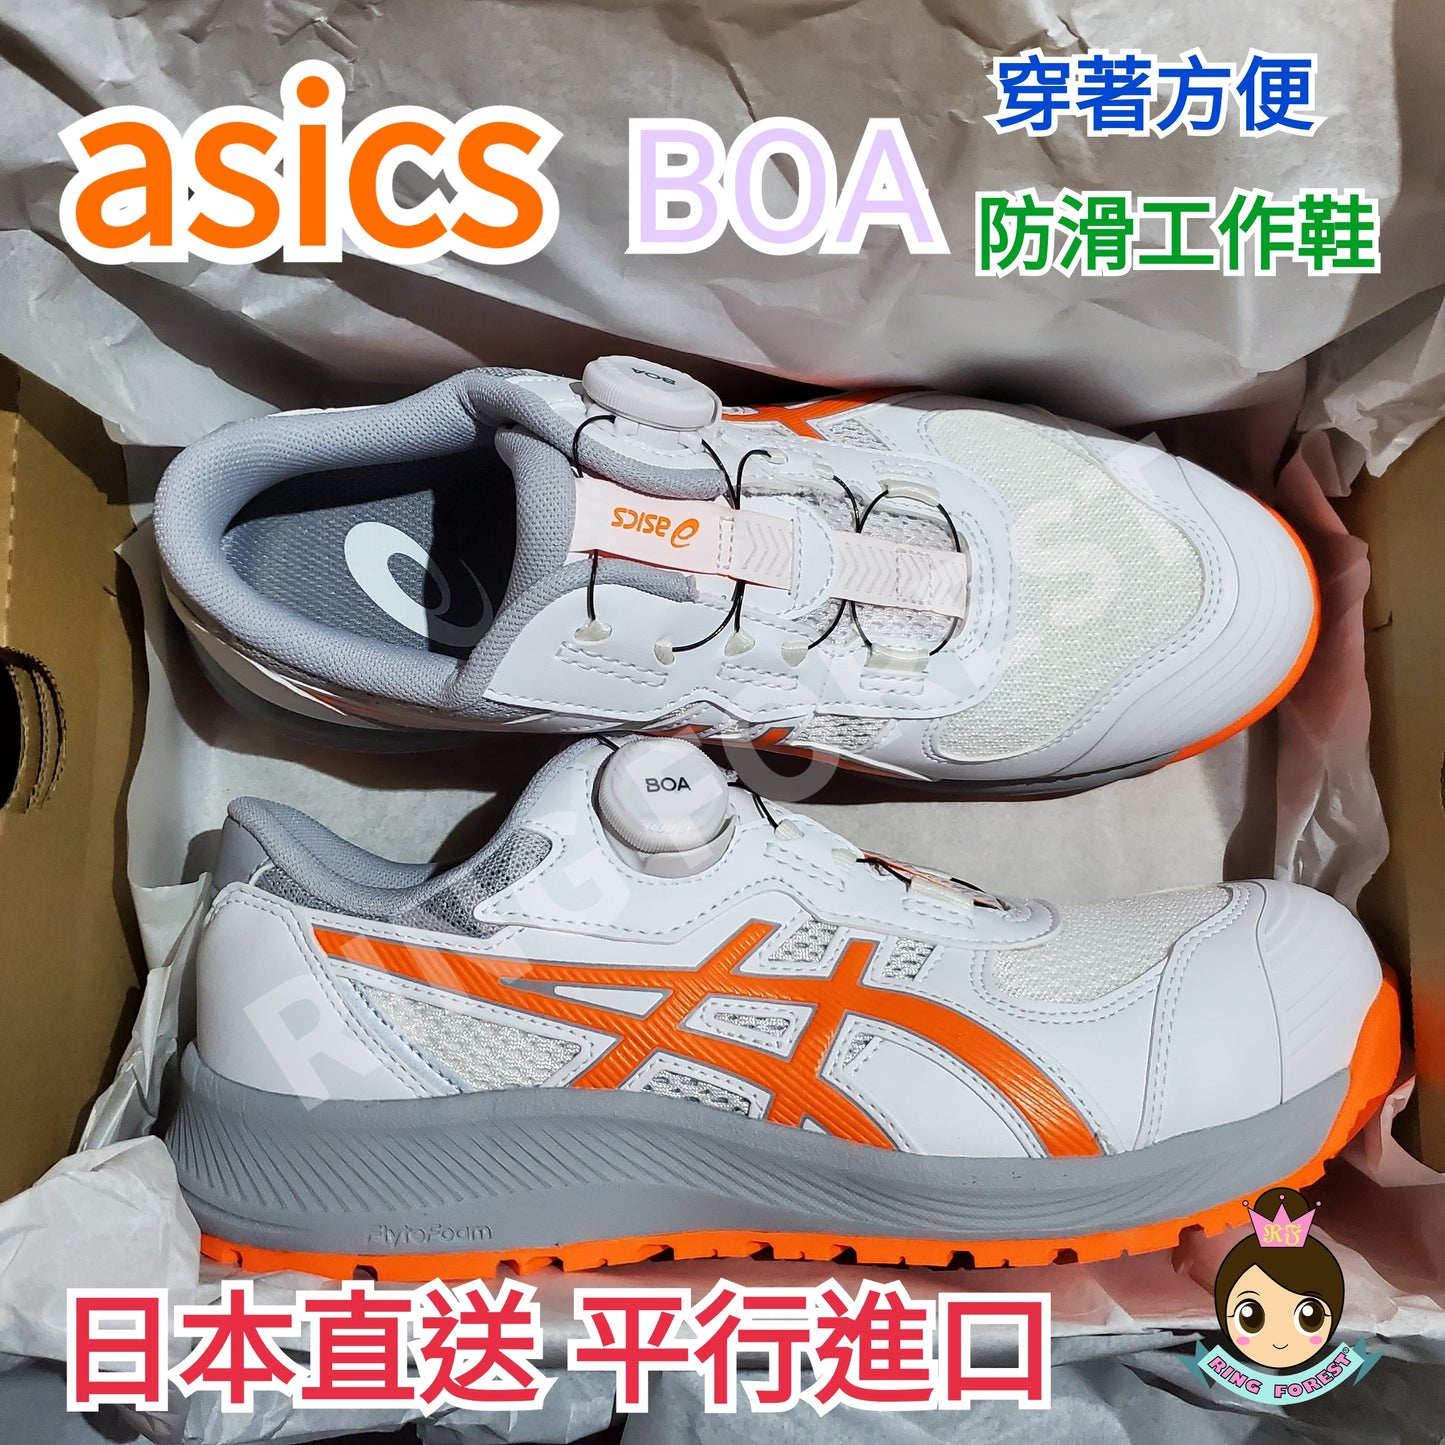 🎌日本🎌 直送 【限時預訂】限定湖水藍 ASICS BOA 防滑安全工作鞋 CP219